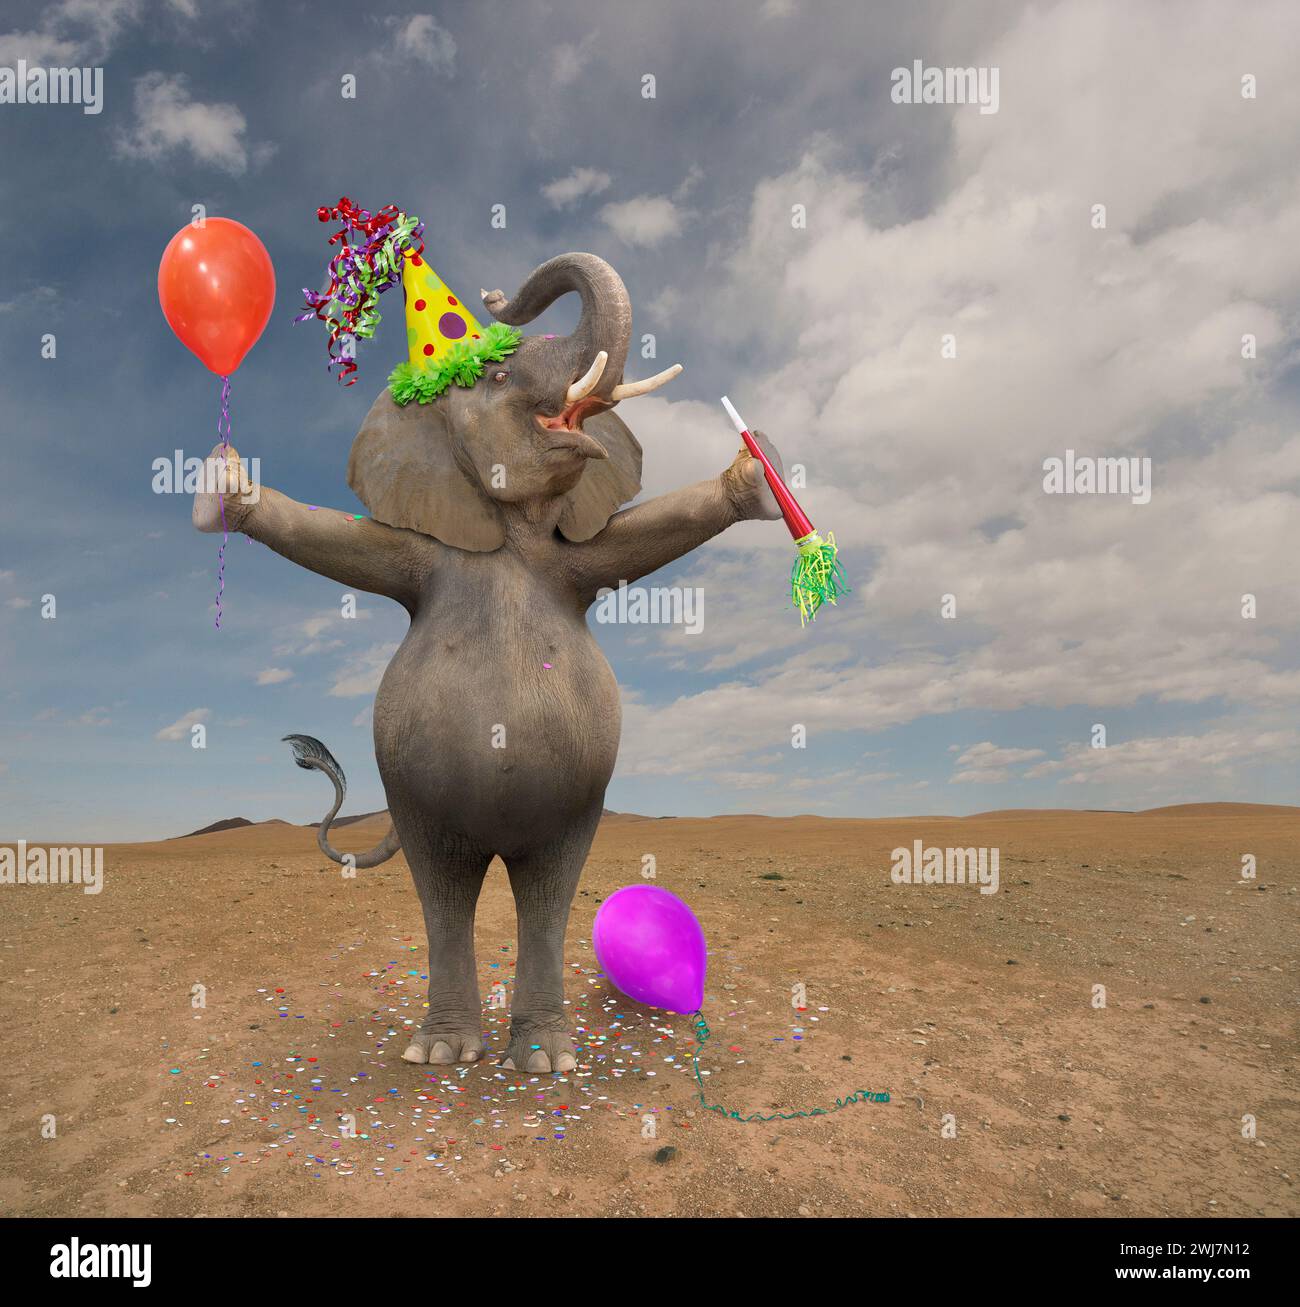 Un éléphant drôle étire ses bras et tient un ballon et un générateur de bruit dans une célébration et une annonce Banque D'Images